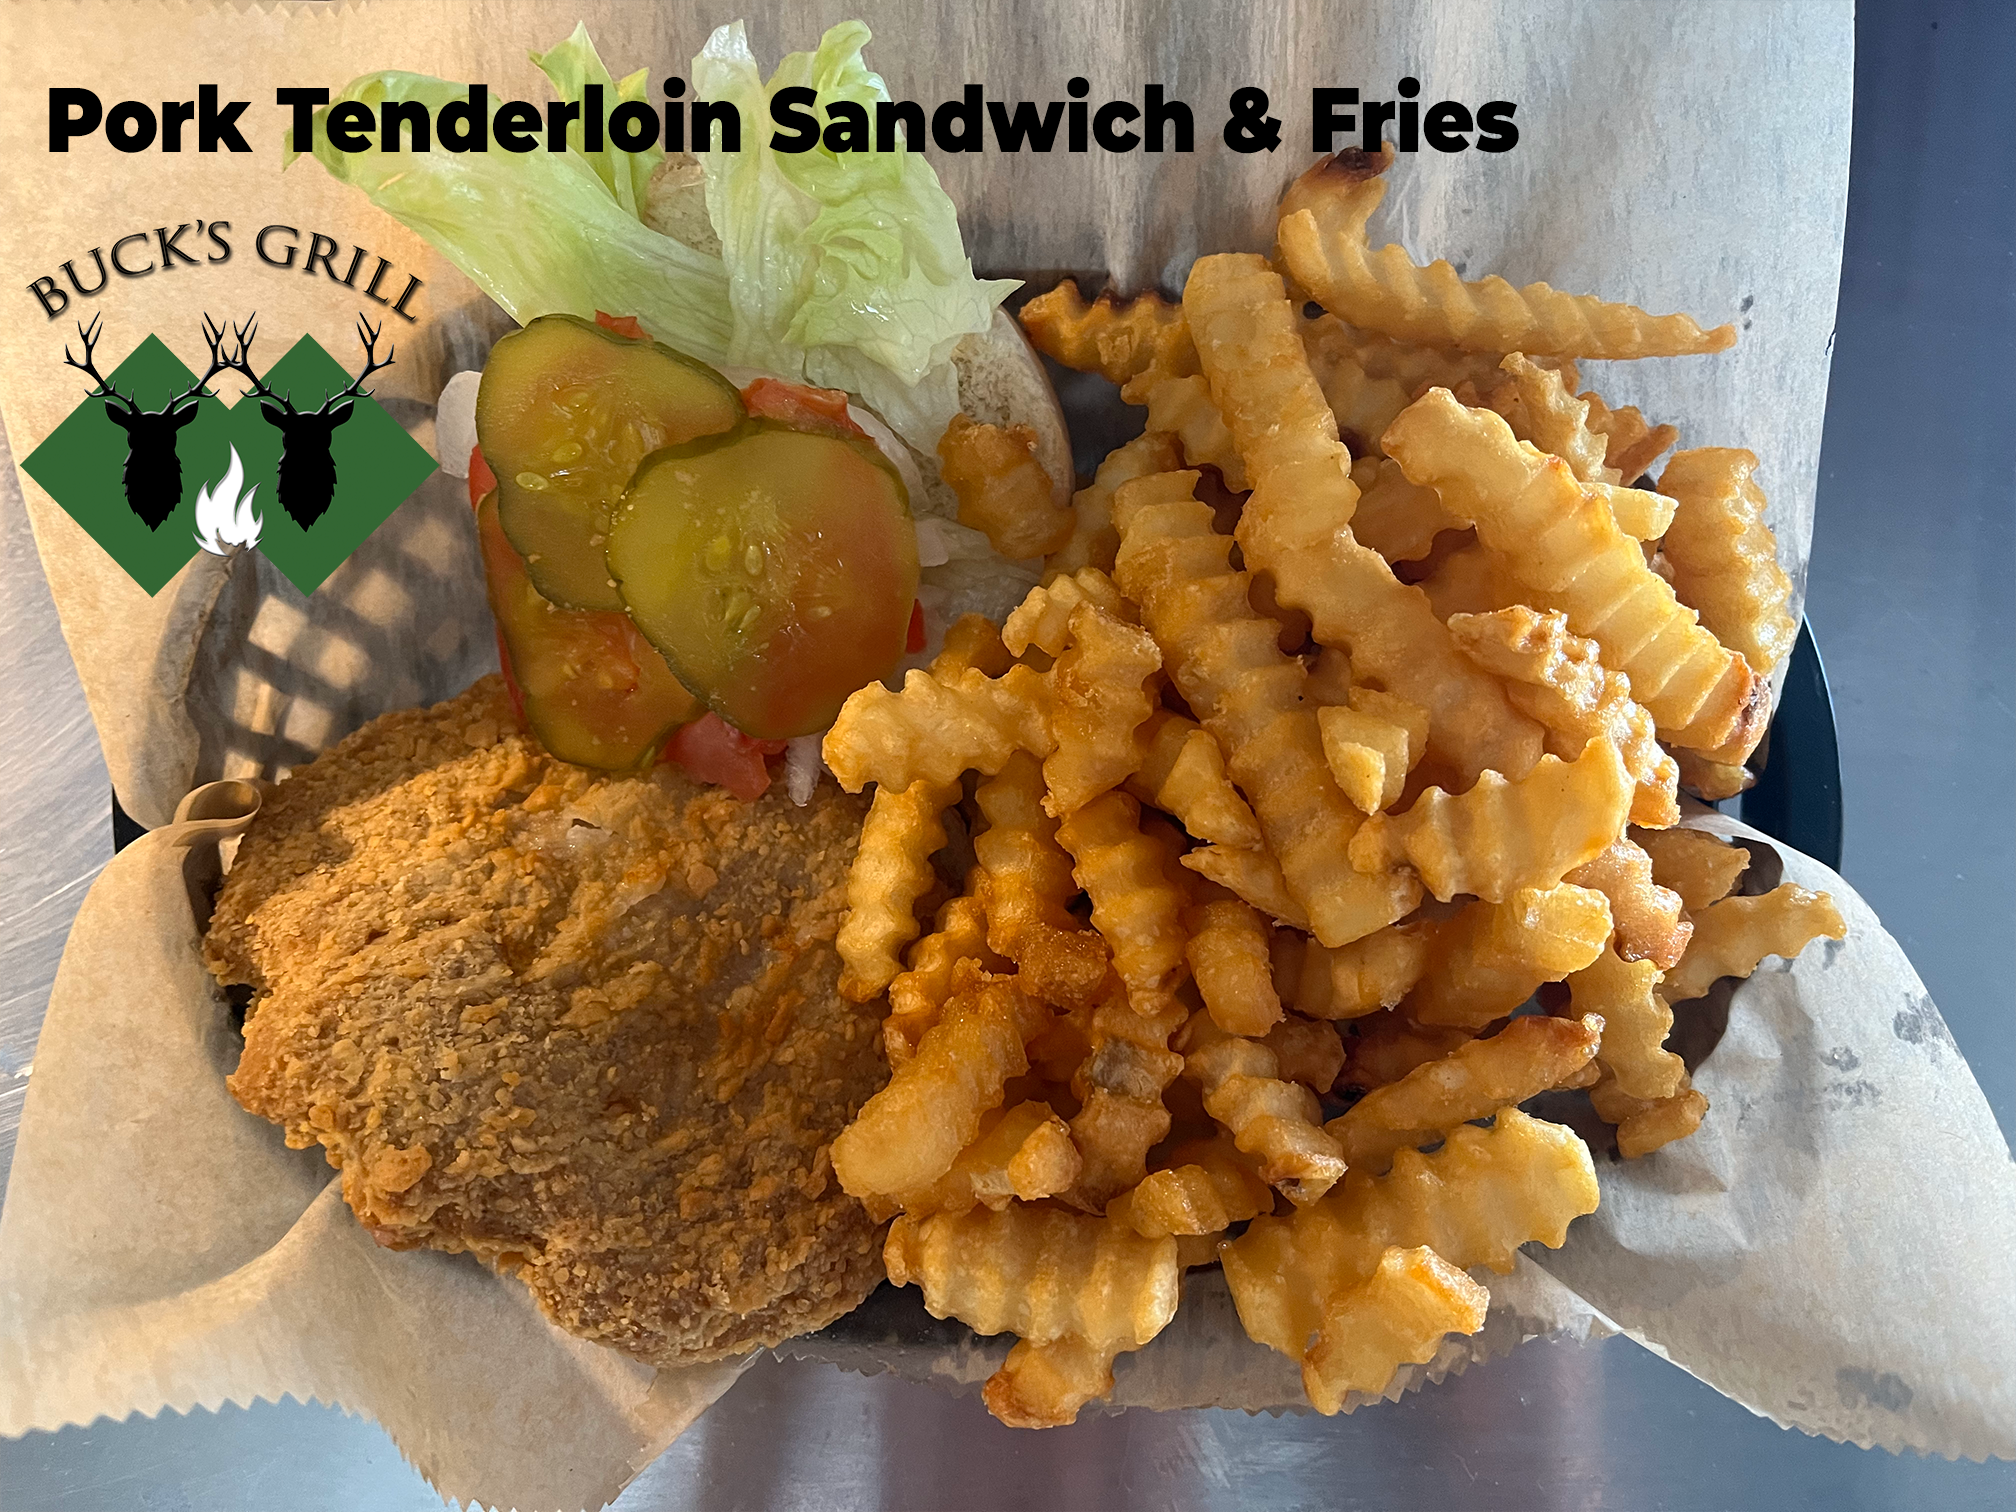 Pork Tenderloin Sandwich and Fries at Bucks Grill